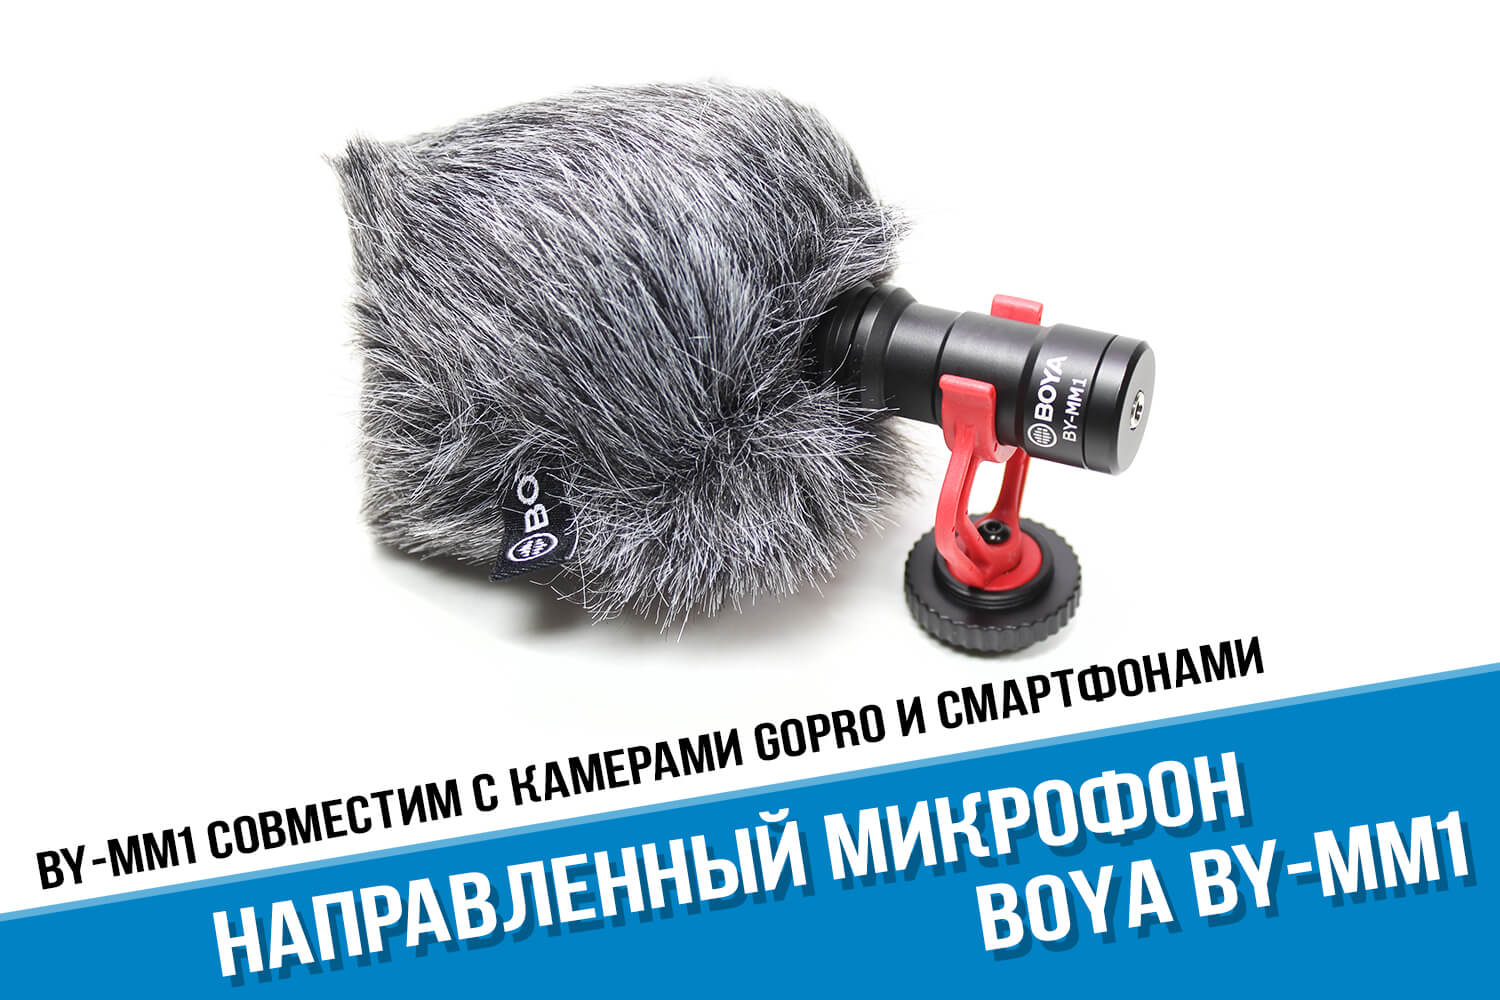 Микрофон Boya BY-MM1 для камеры GoPro